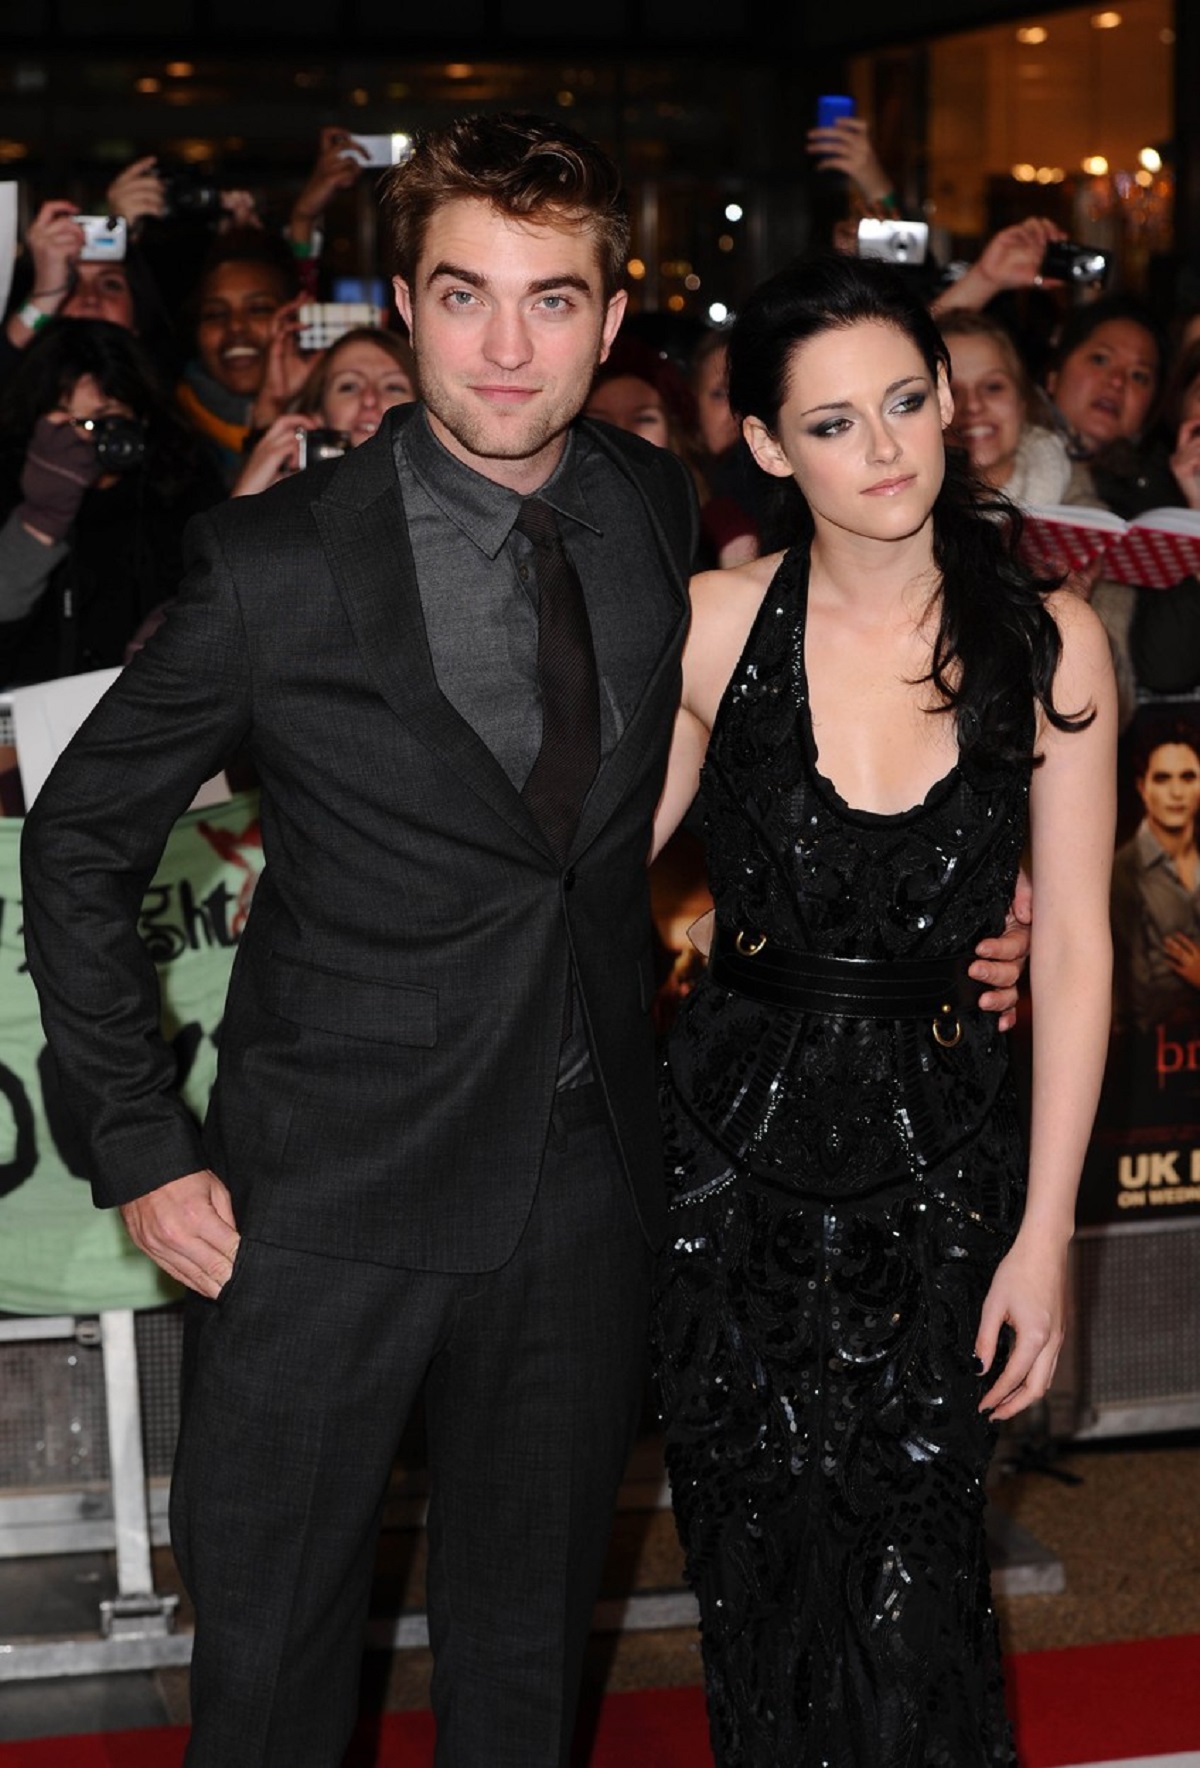 Kristen Stewart într-o rochie neagră alături de actorul Robert Pattinson care este la costum, în timp ce pozează pe covorul roșu la premiera filmului Twilight din Londra